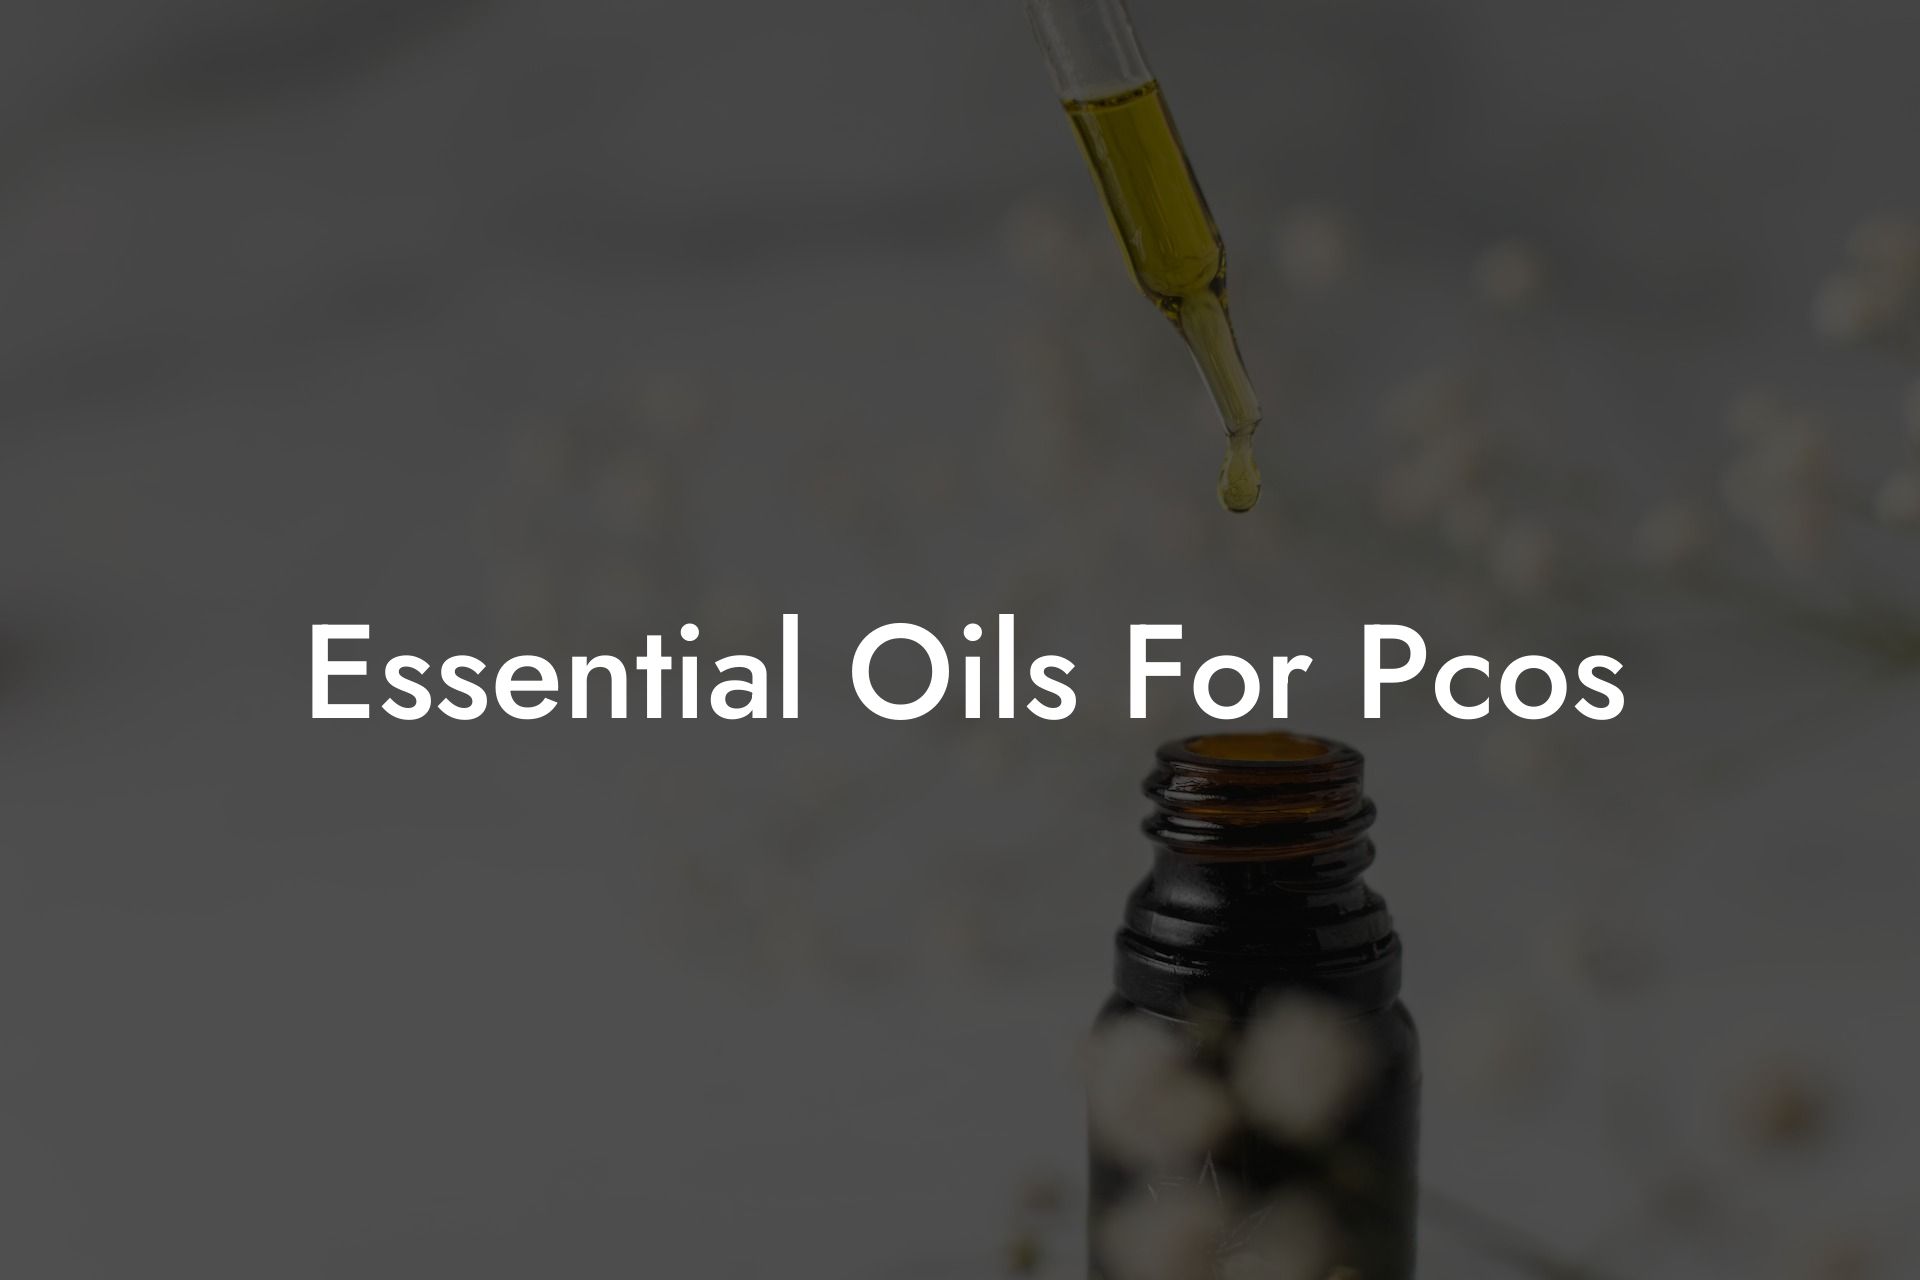 Essential Oils For Pcos